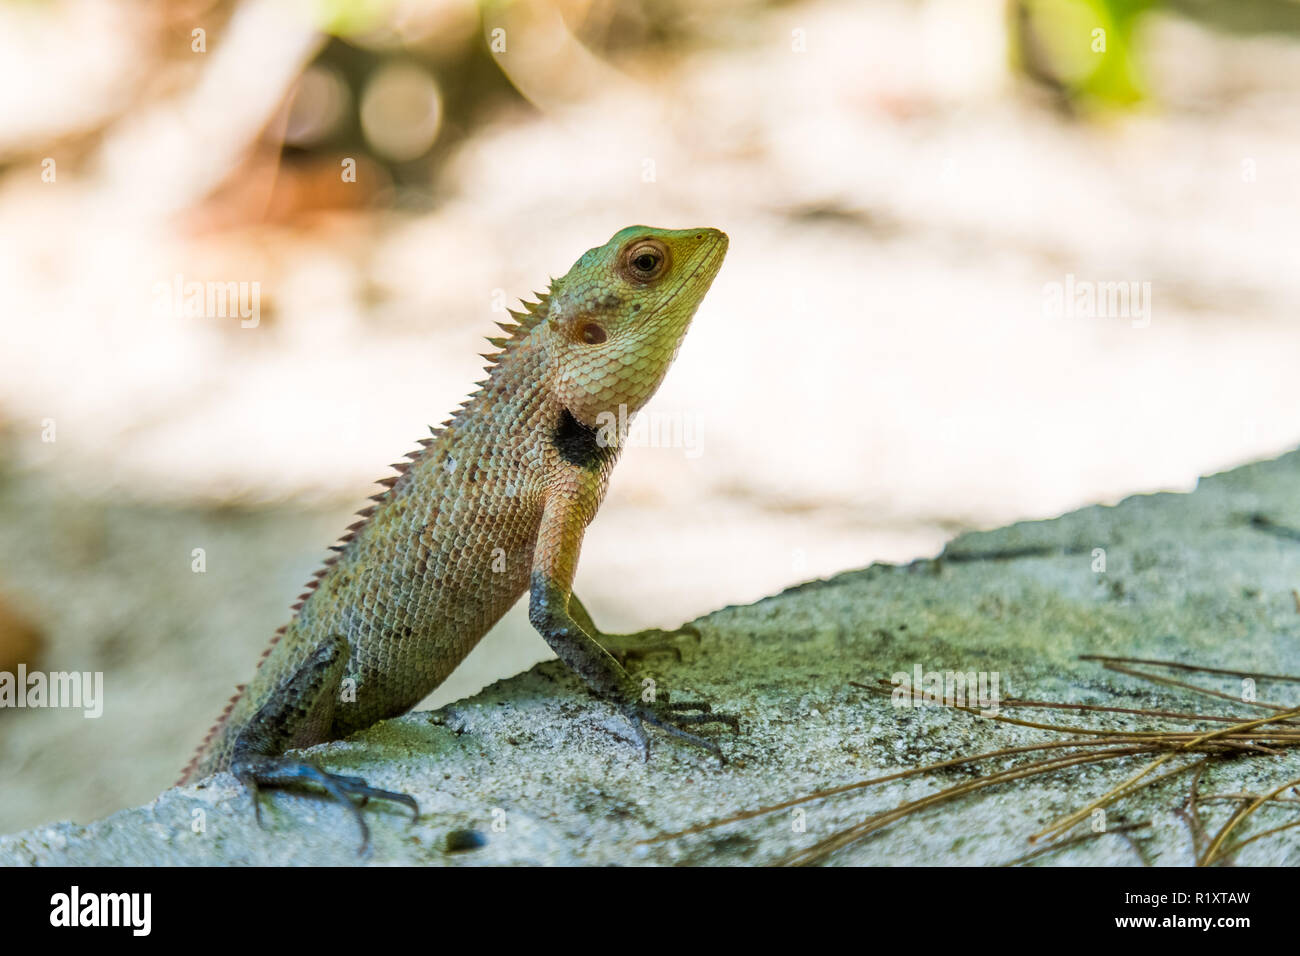 Lizard closeup mientras disfruta de sol de mañana, retrato animal tropical Foto de stock